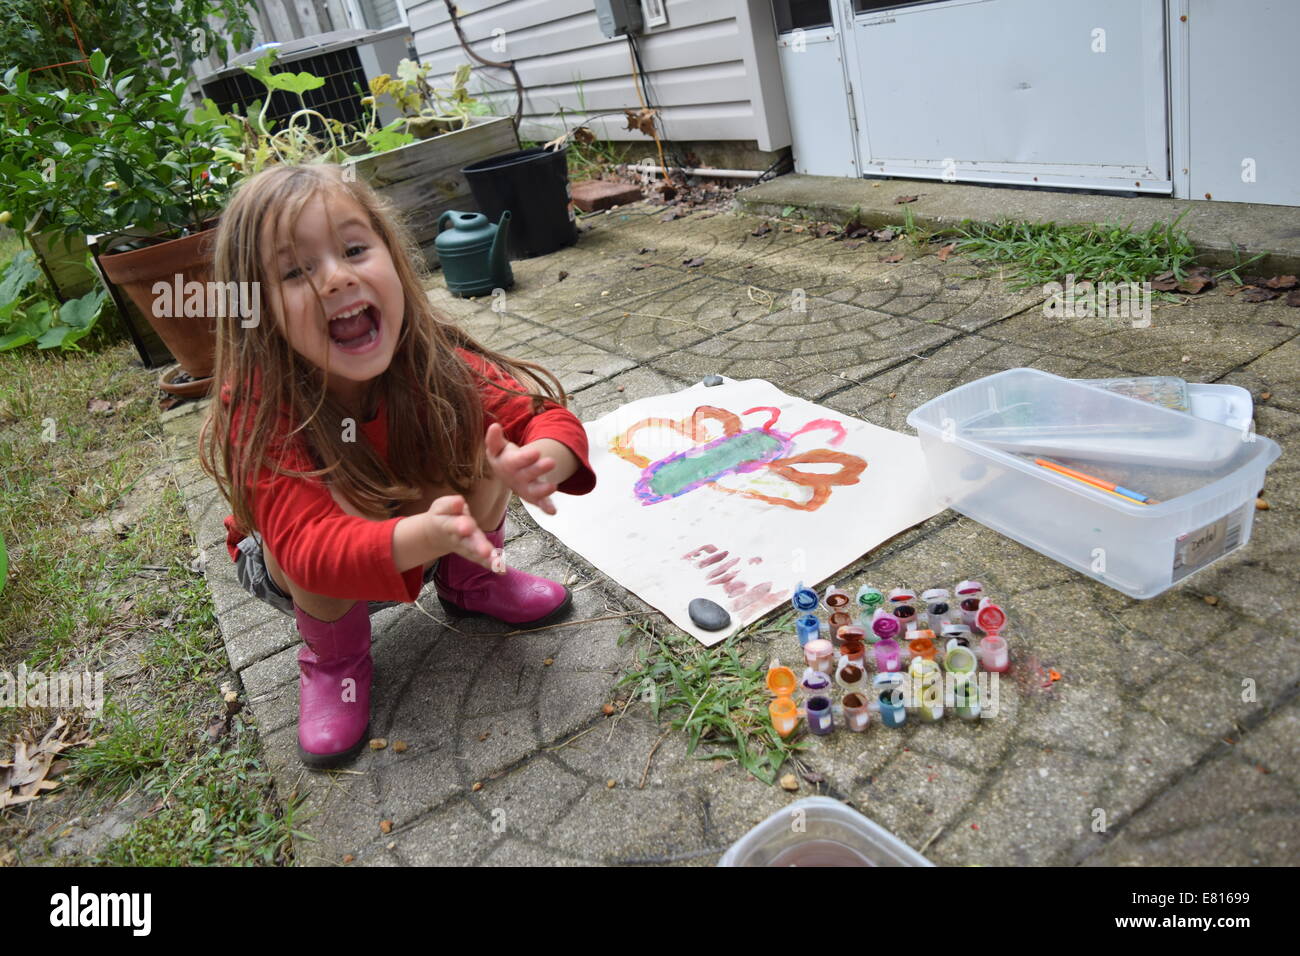 Smiling girl clapping à côté d'art aquarelle de butterfly Banque D'Images